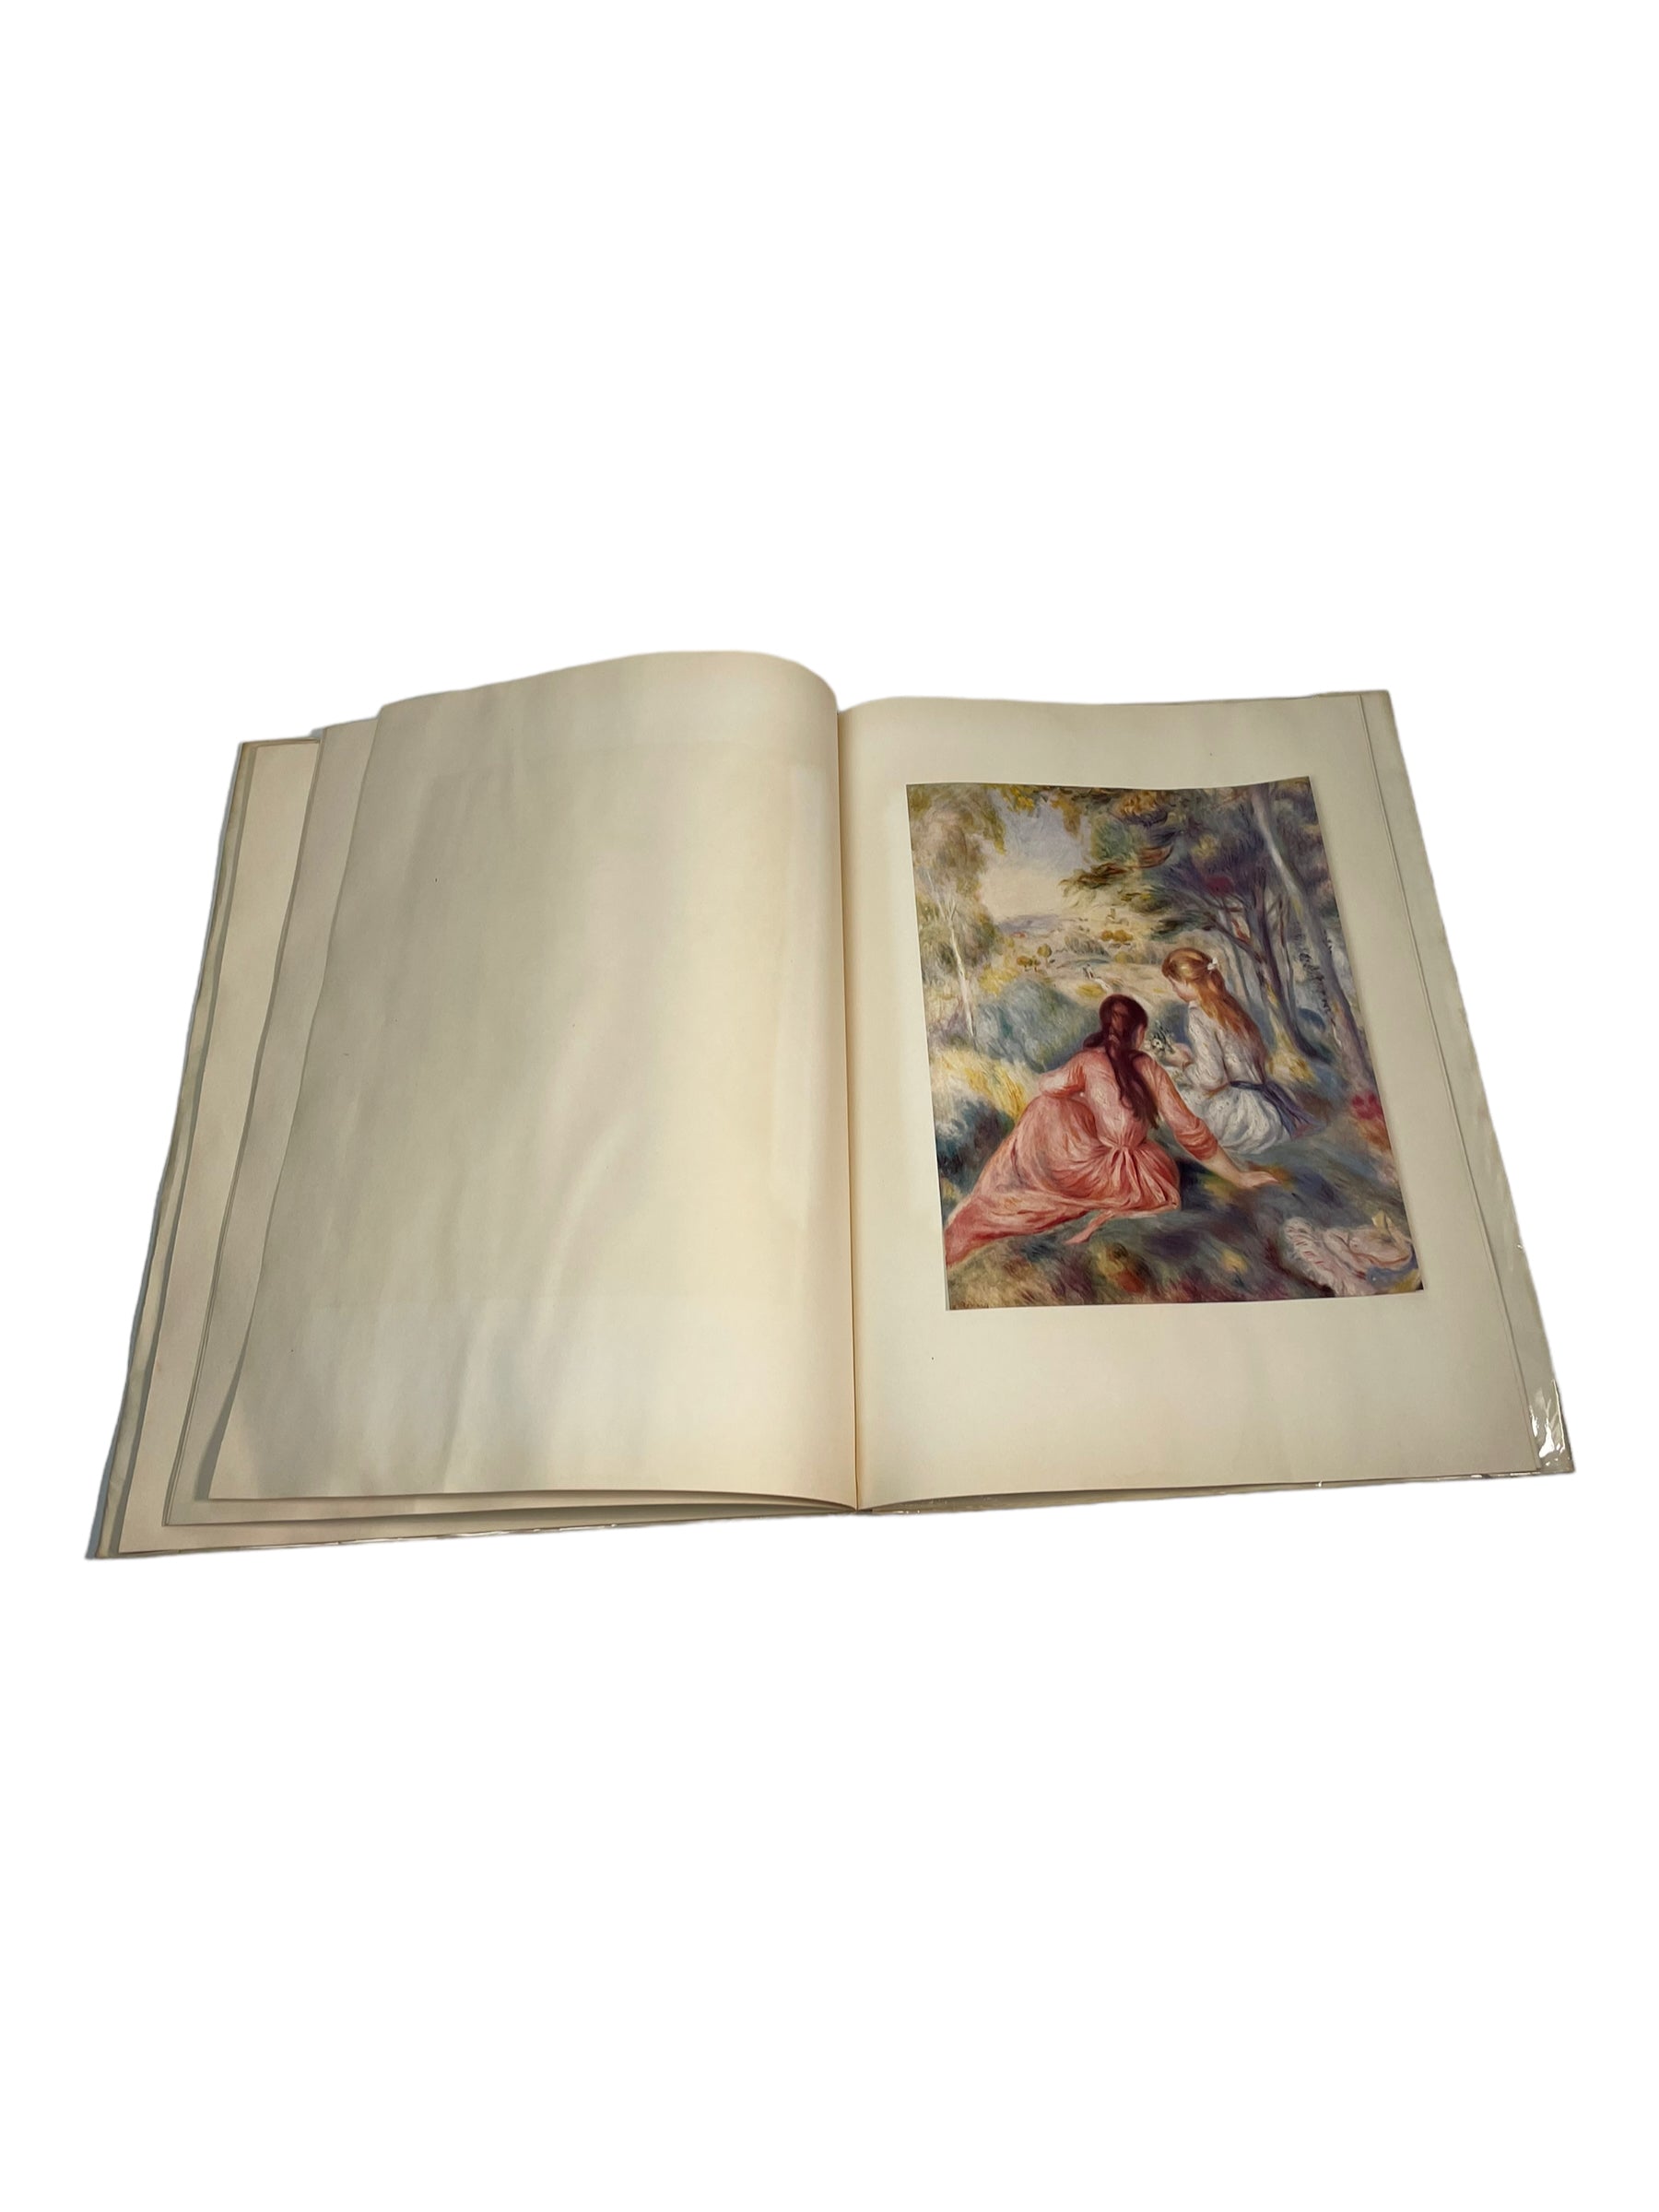  Livre d'art Renoir Abrams - 16 magnifiques impressions en couleur